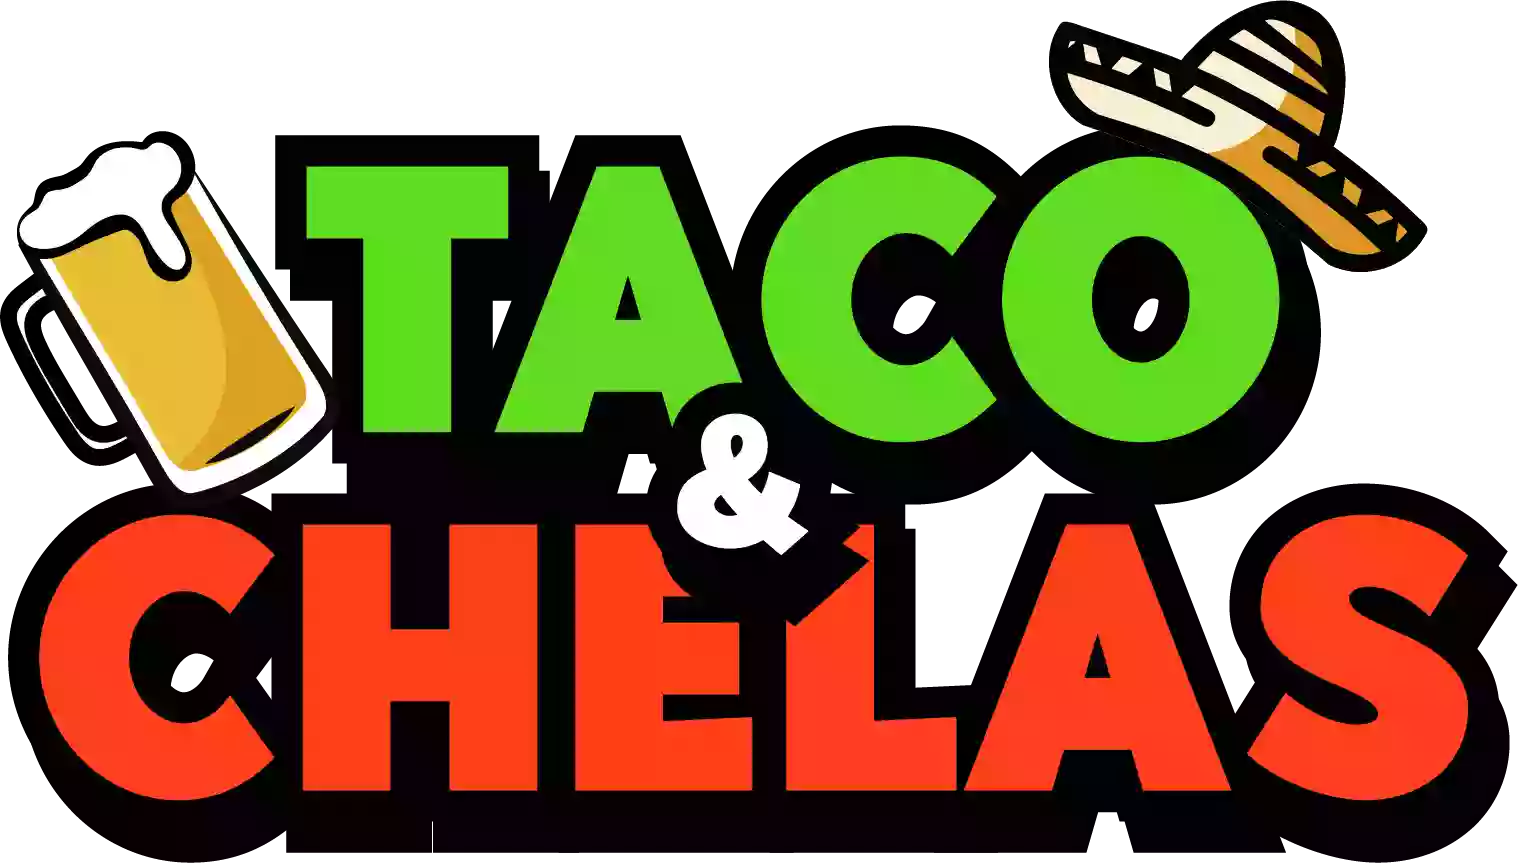 Taco & Chelas